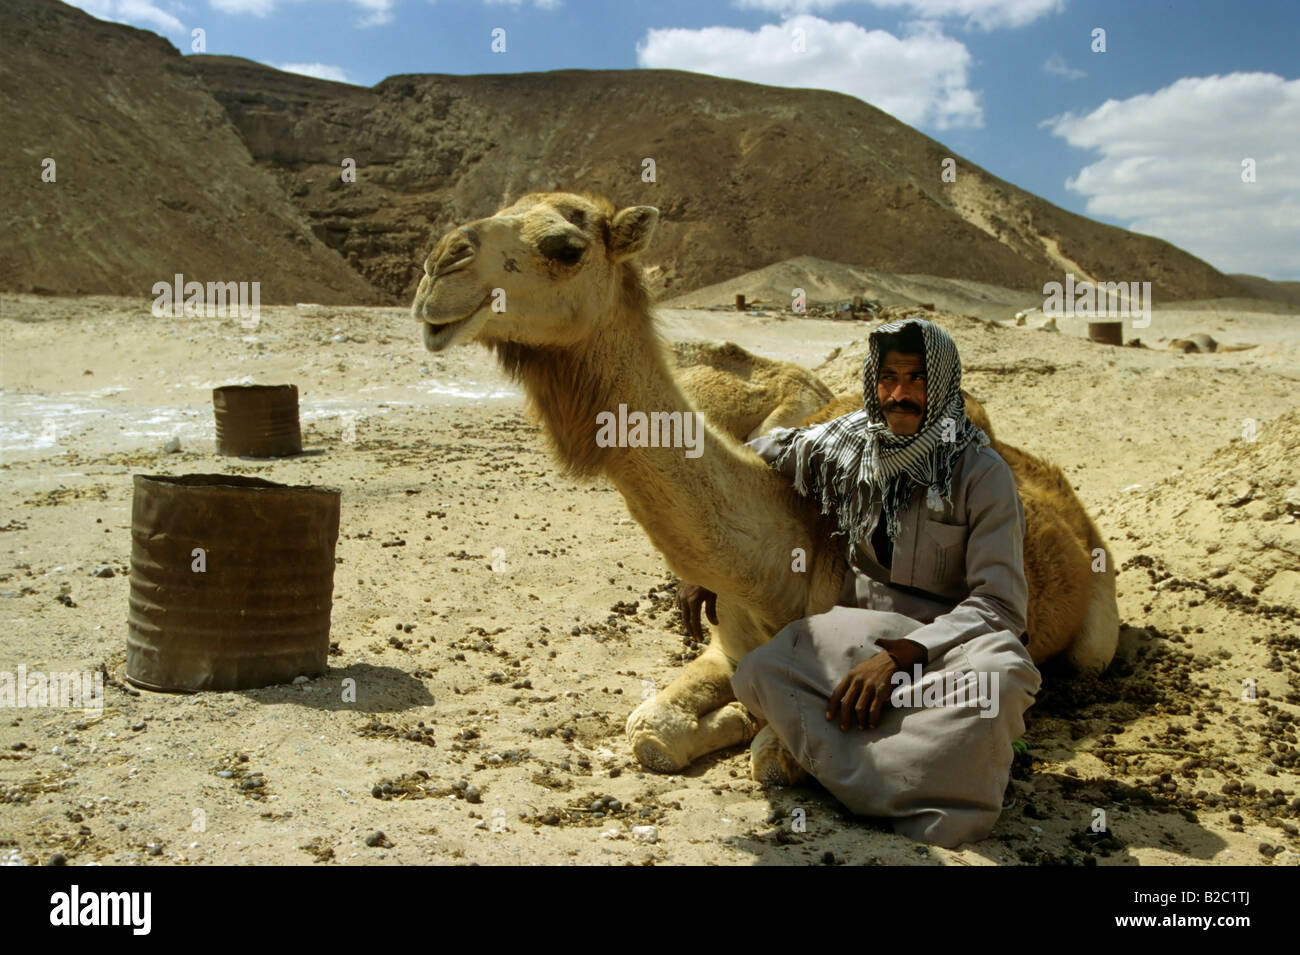 Los beduinos sentados junto a un camello bactriano (Camelus bactrianus) delante de una colina en el desierto de Sinaí, Egipto, África Foto de stock